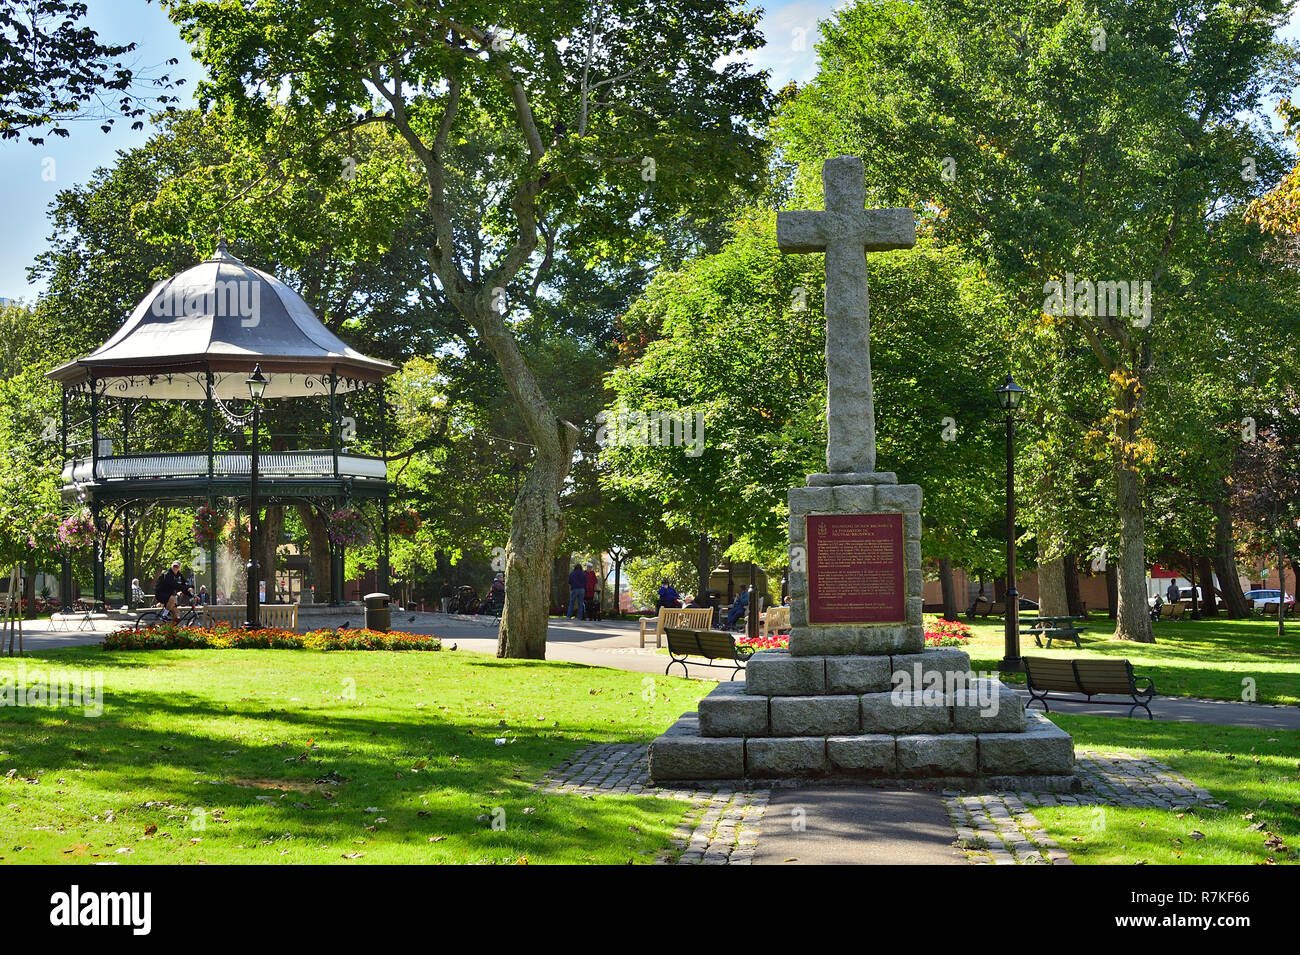 In King Square una pietra croce commemorativa per onorare lo sbarco dei primi coloni, il fedele nella città di Saint John New Brunswick Canada. Foto Stock